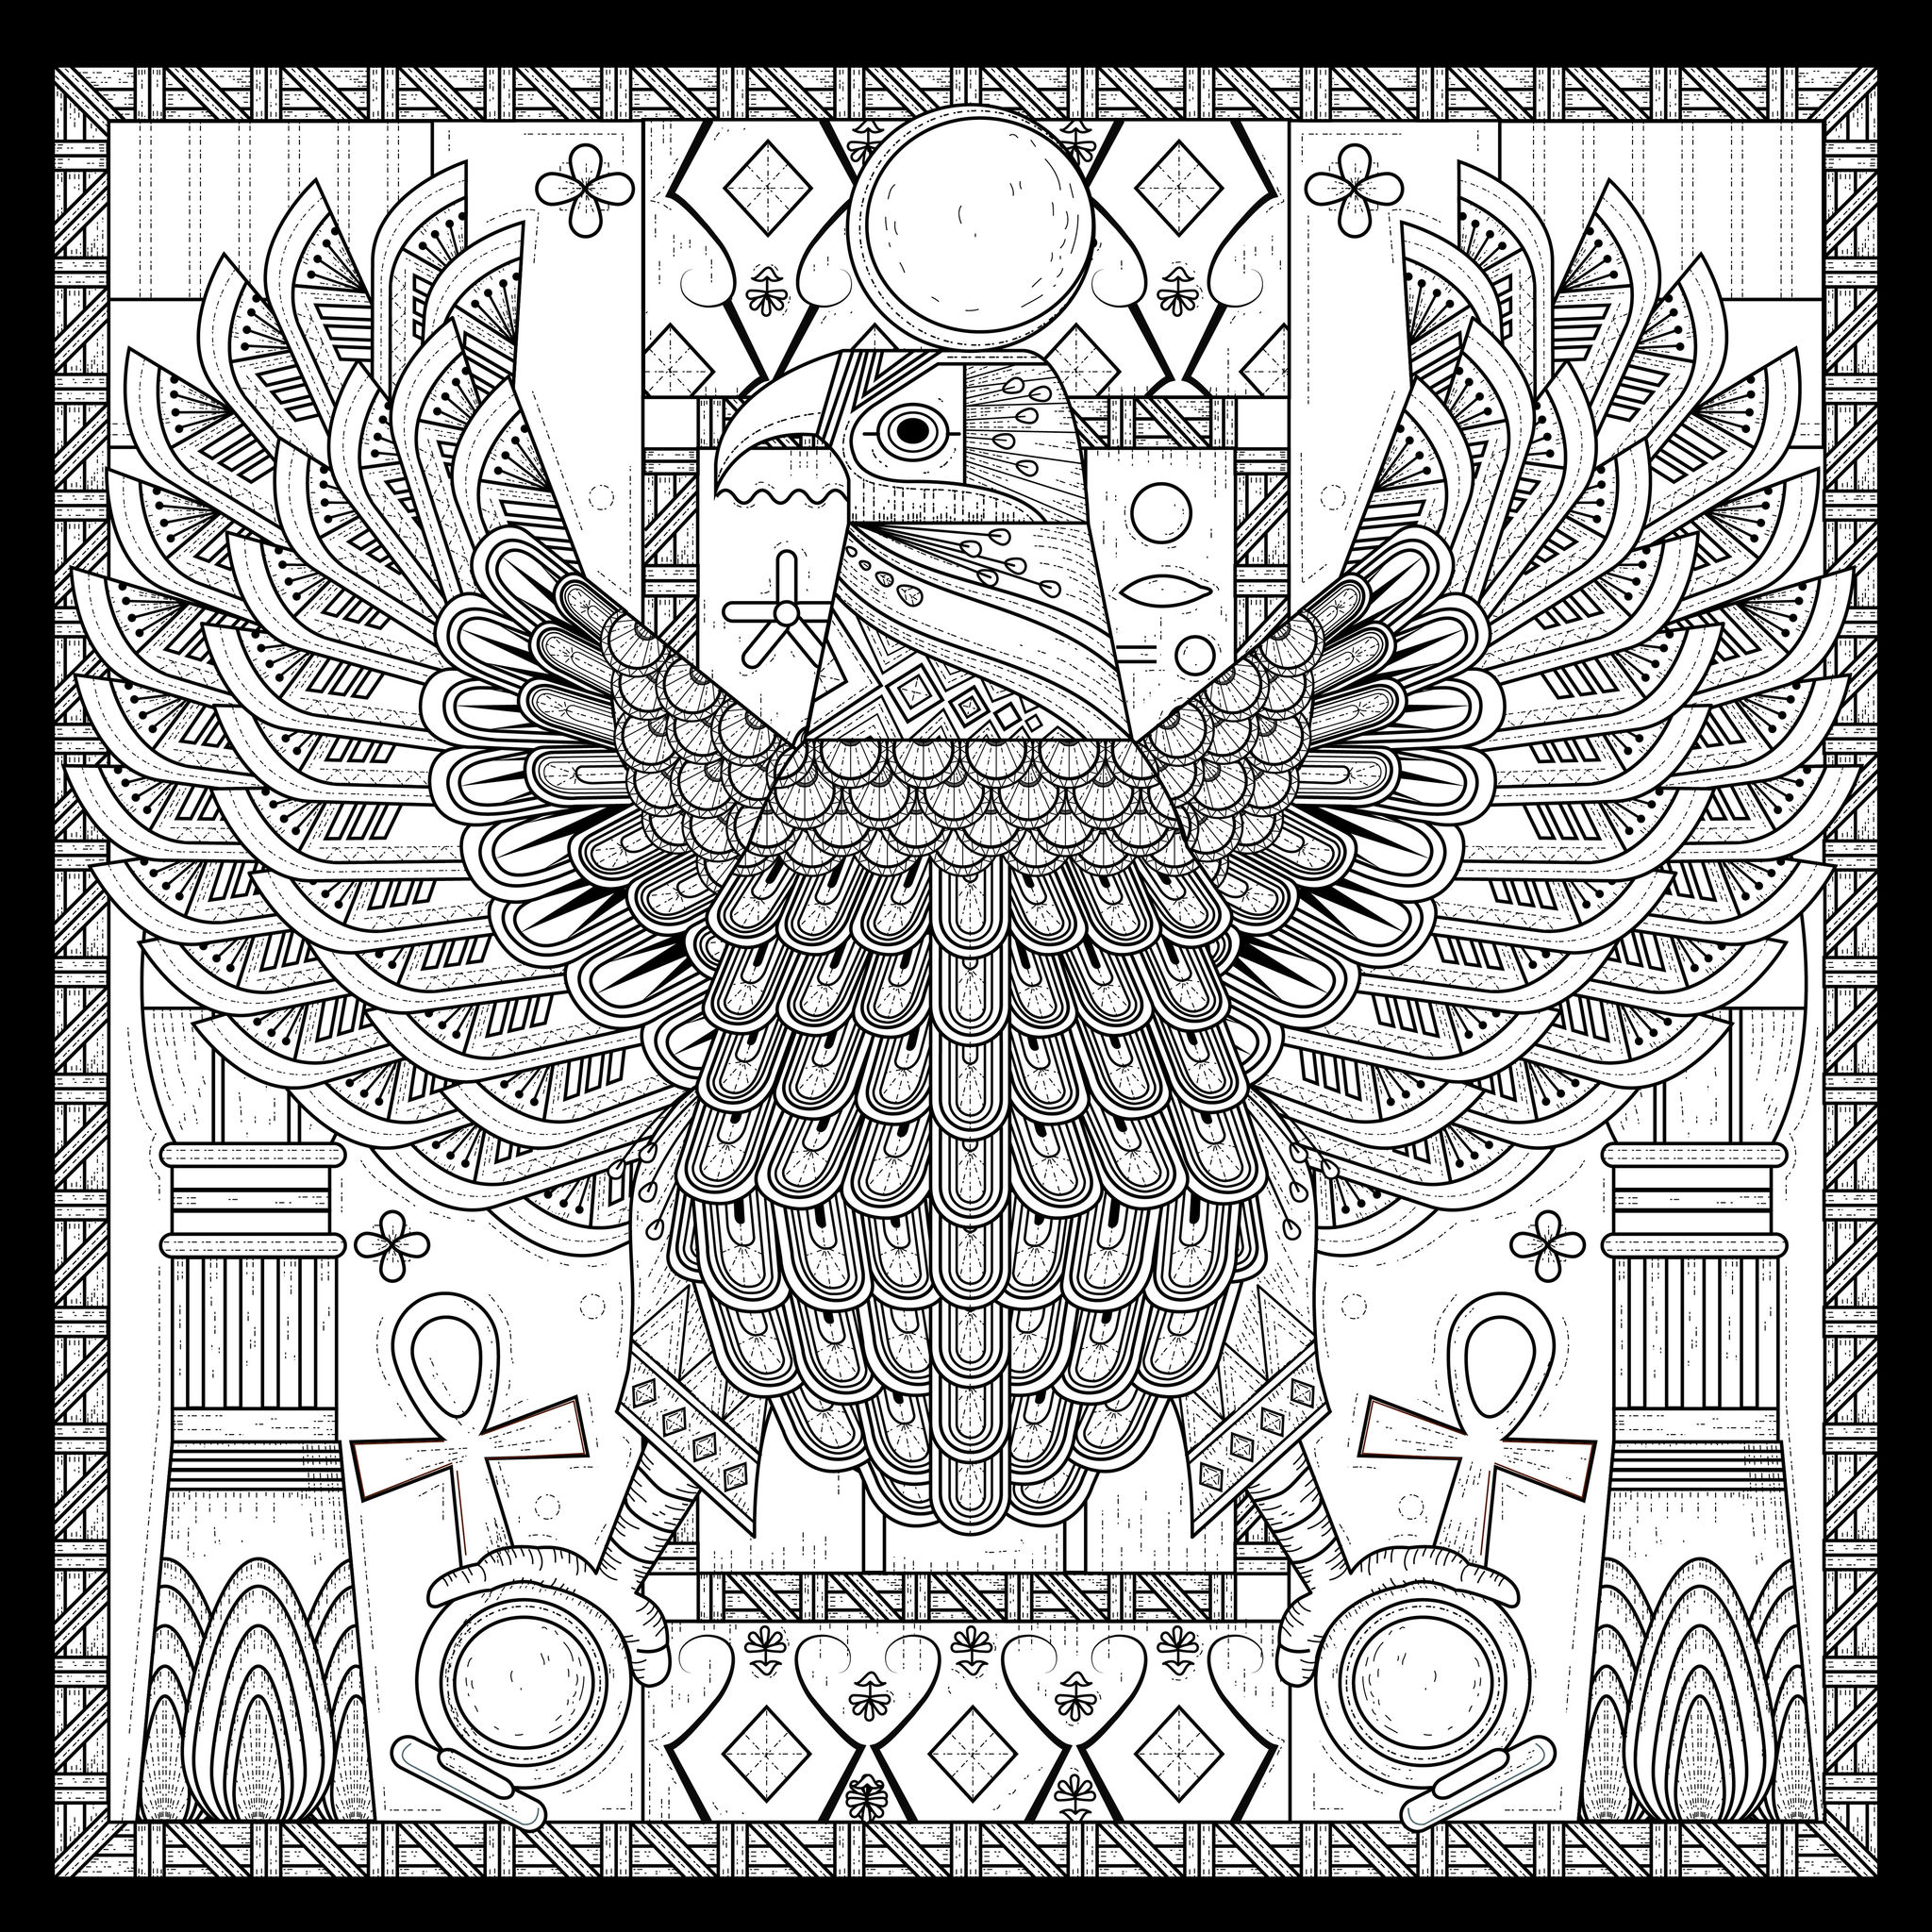 Coloriage complexe style égyptien d'un aigle, symbole d'unité, Artiste : Kchung   Source : 123rf